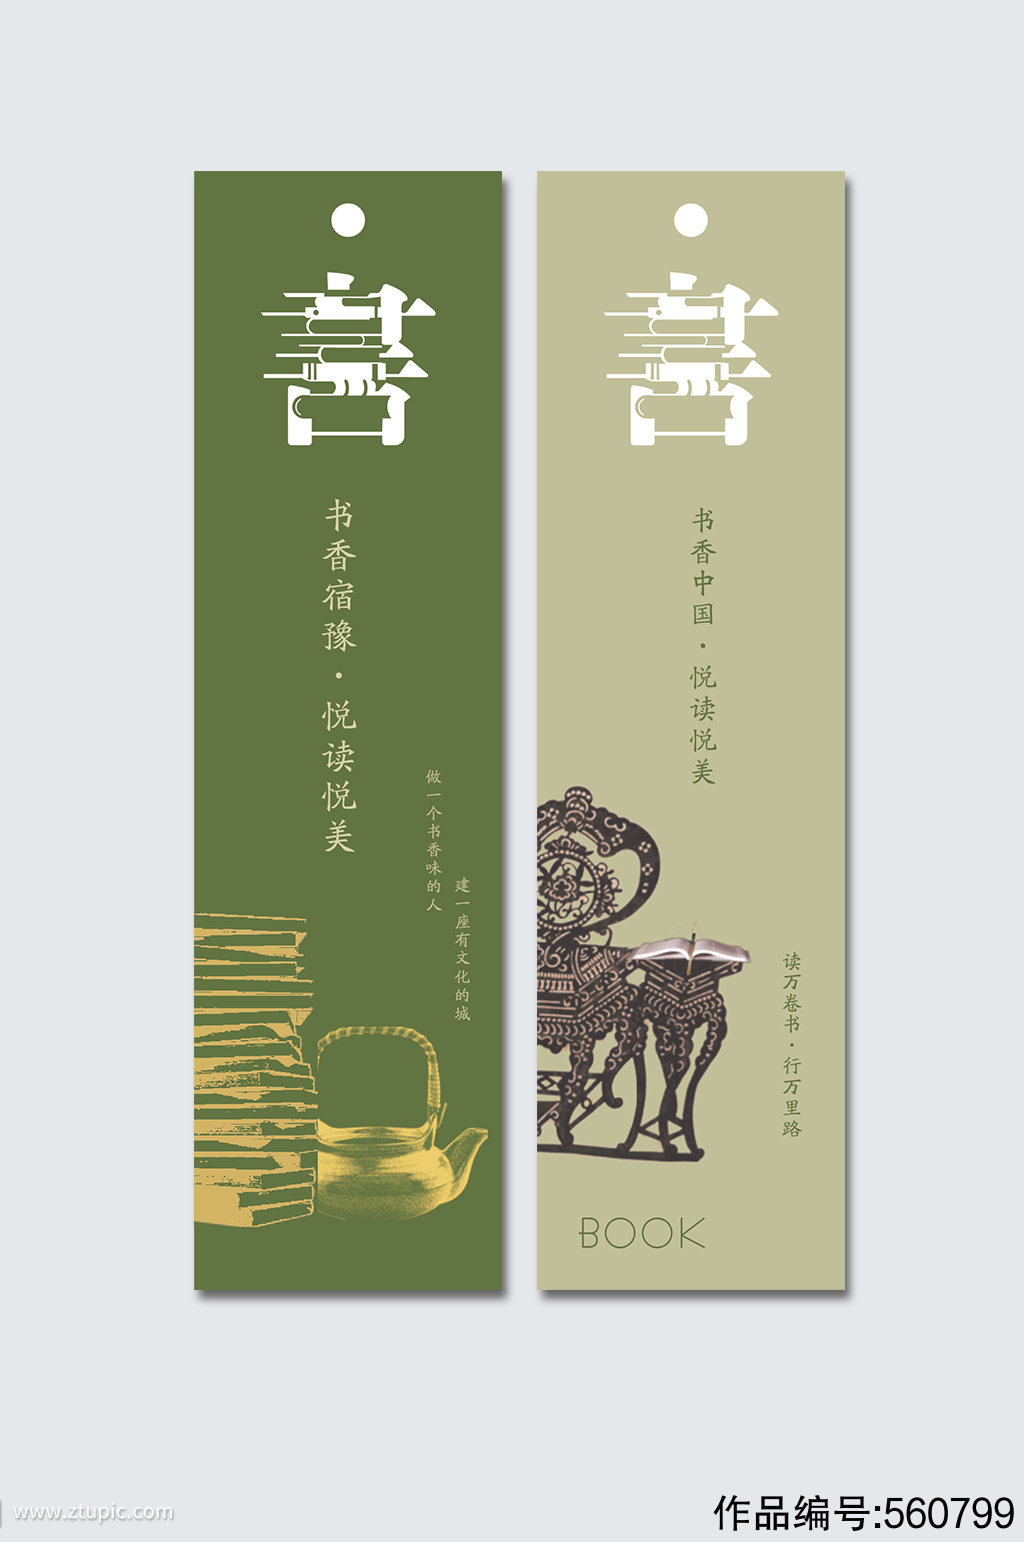 绿色中国风书签设计模板下载-编号560799-众图网